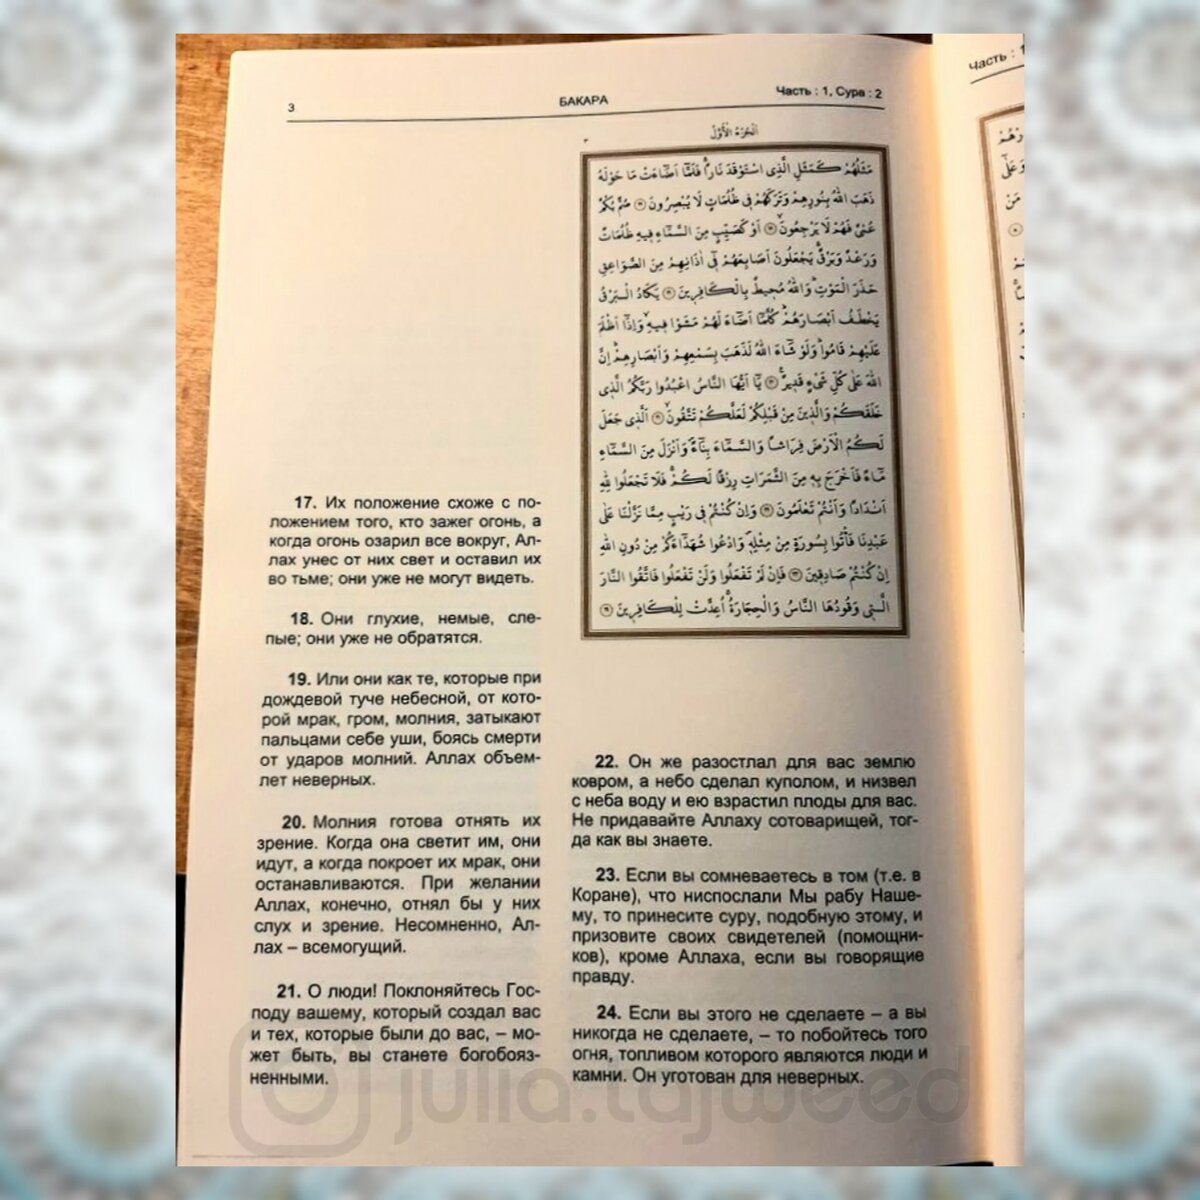 В 1994 году в г. Баку 🇦🇿 был издан русский перевод азербайджанского учёного Фазила Караоглы. Его работа неоднократно публиковалась в Турции 🇹🇷 (как минимум 2 раза издавался в г.-4